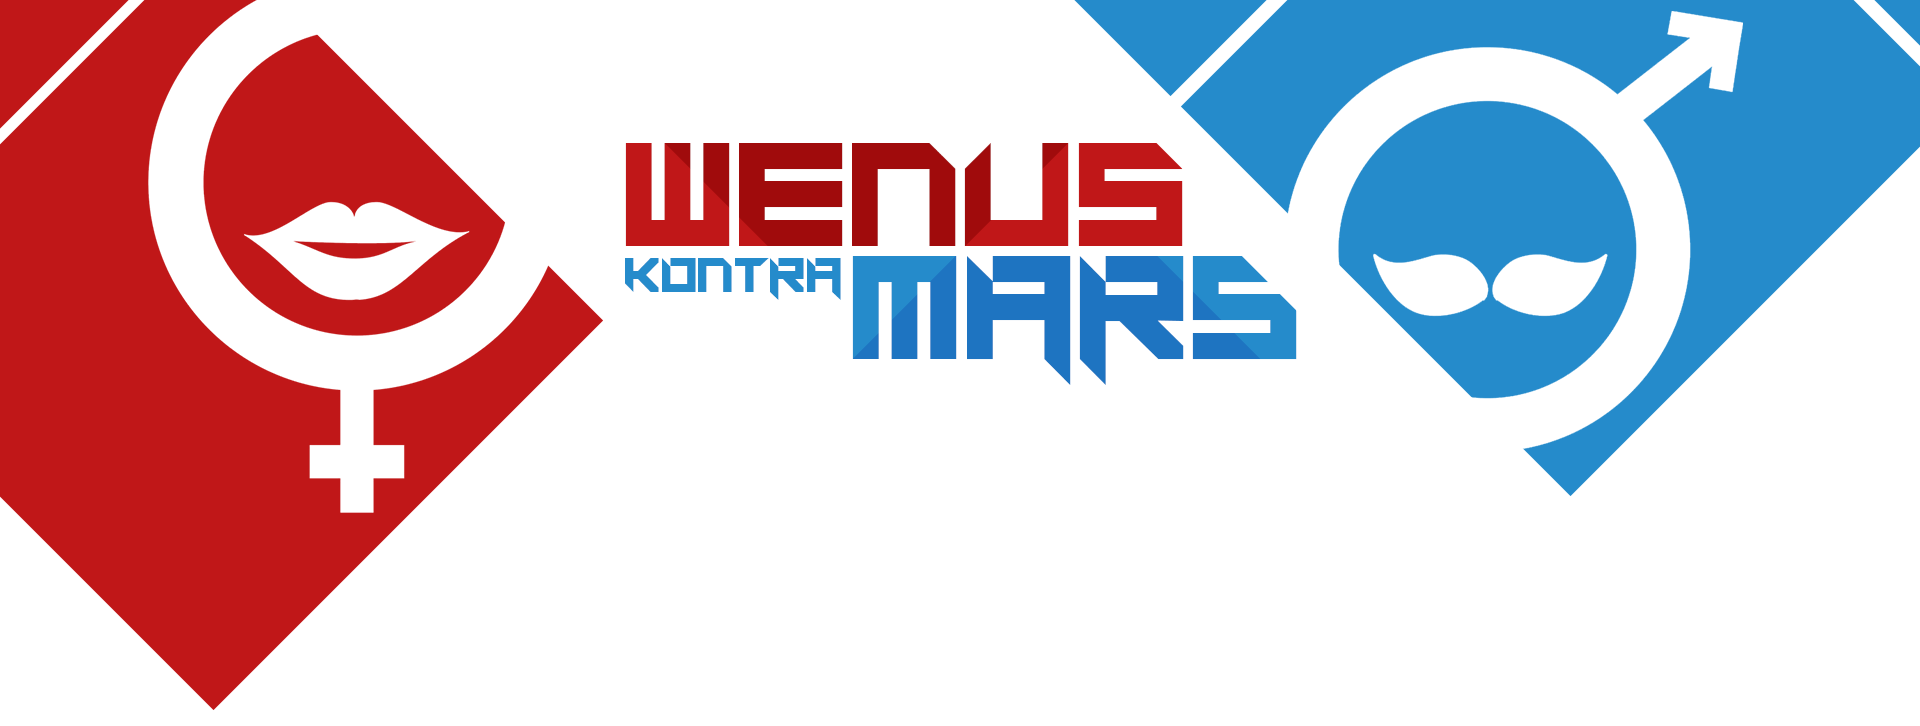 Wenus kontra Mars: wojna płci na antenie Radia ZET!